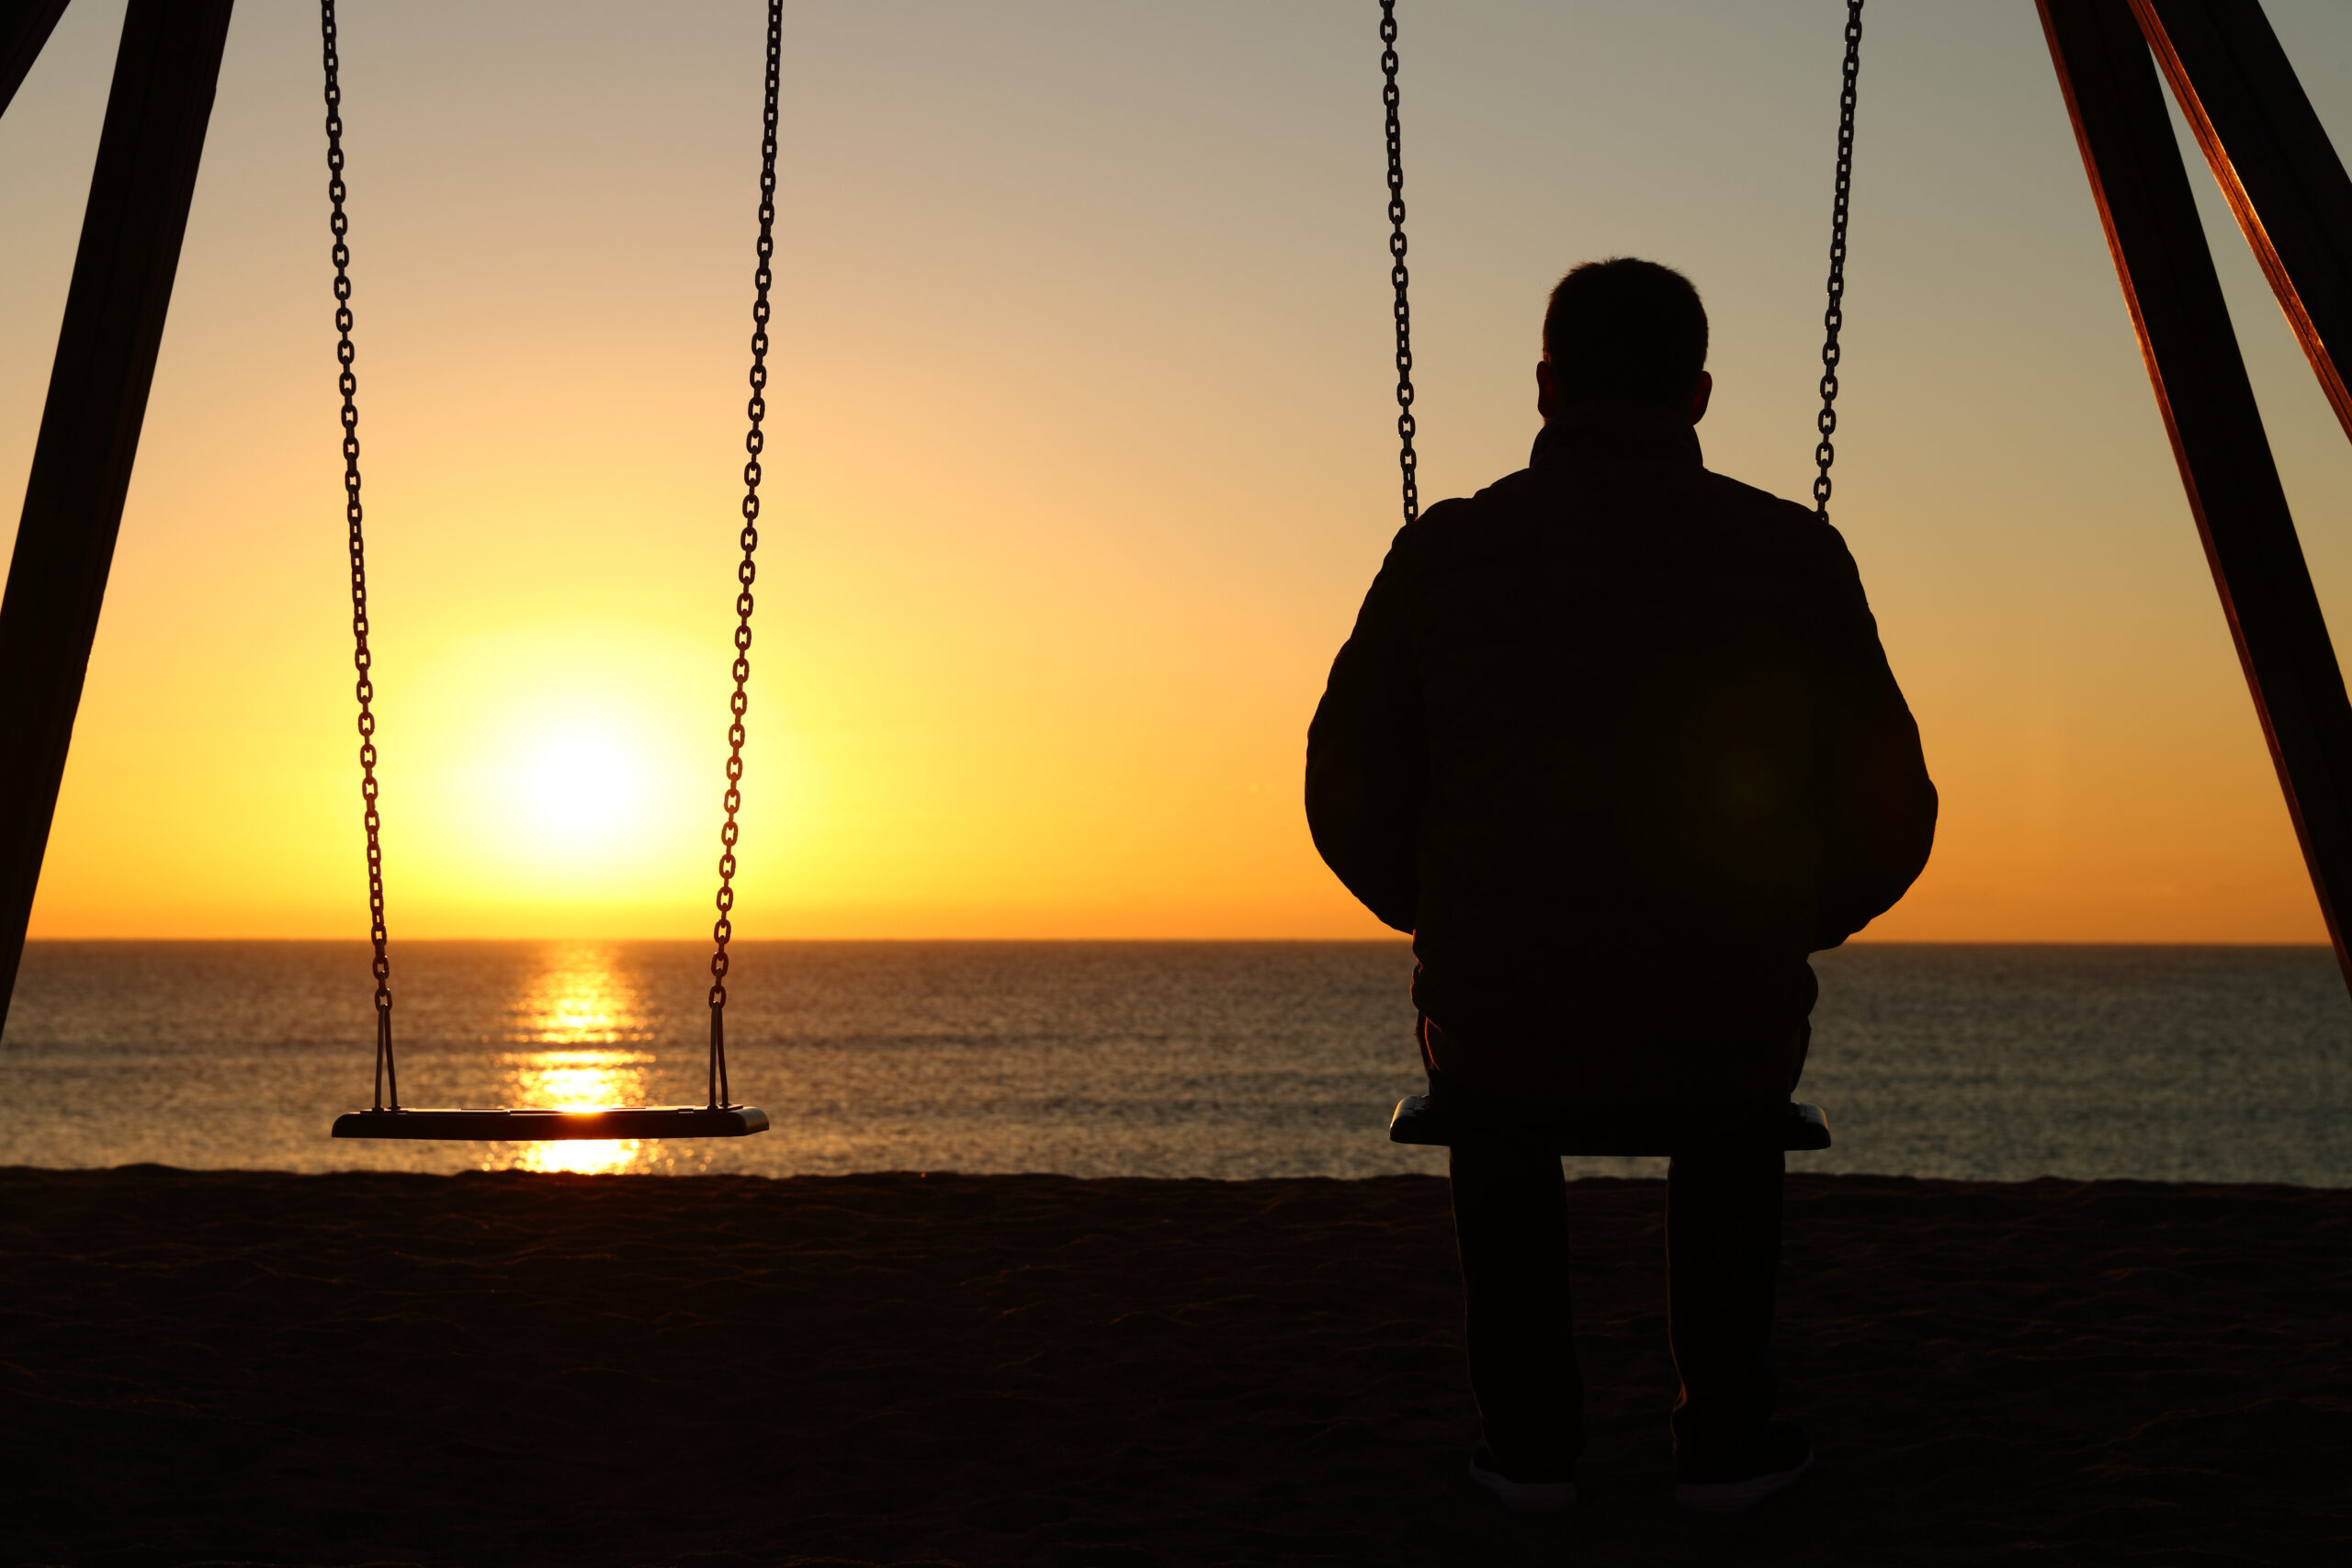 a foto mostra um homem sentando num balanço vendo o pôr do sol. do lado dele, tem um balanço sem ninguém